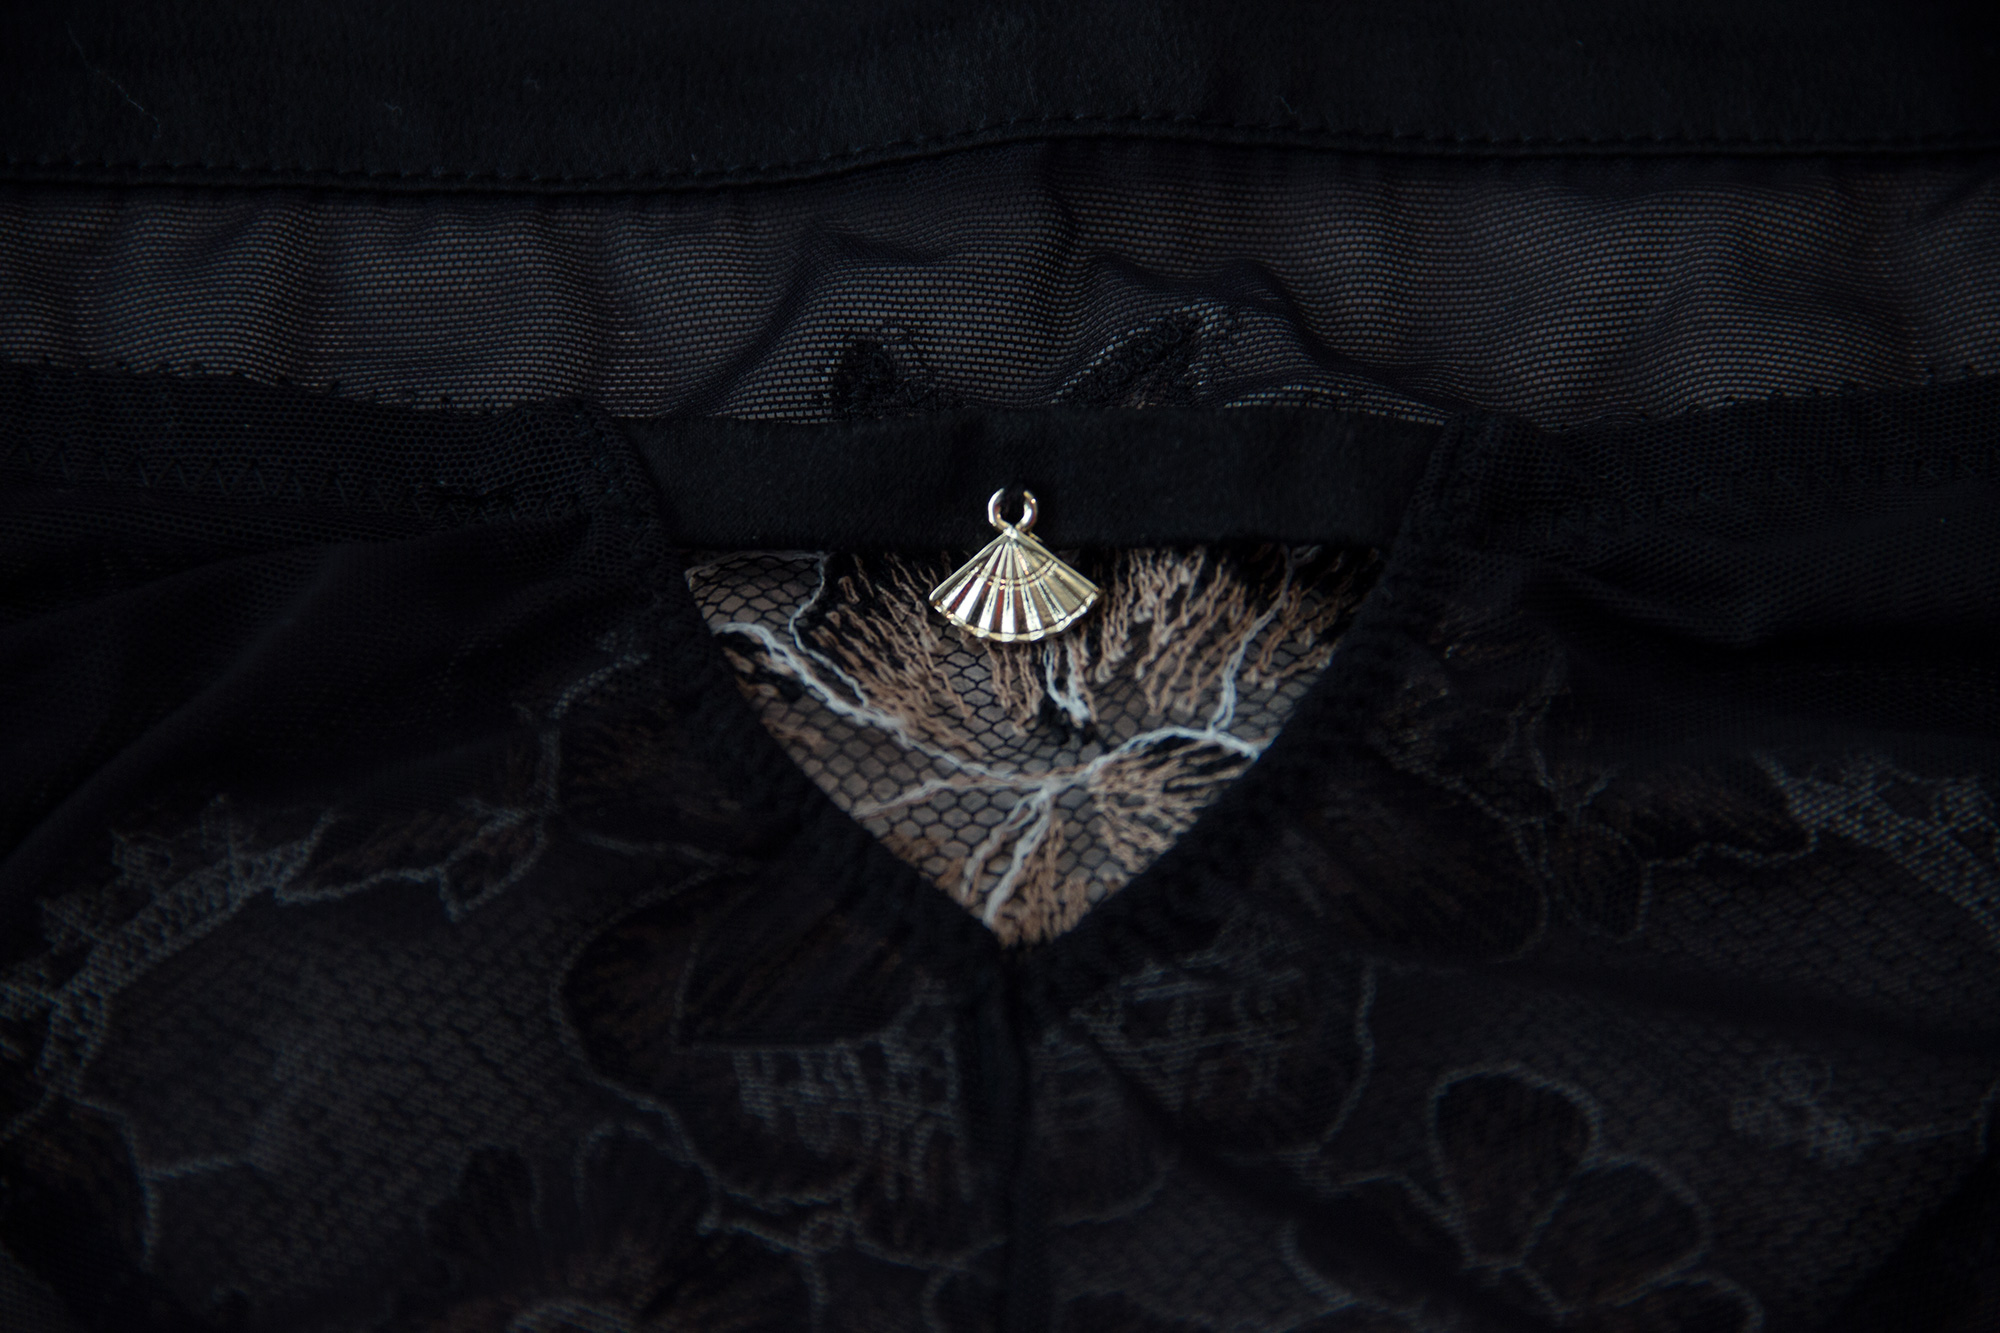 Обзор нижнего белья Club от Shell Belle Couture в журнале GB {Garterblog.ru}